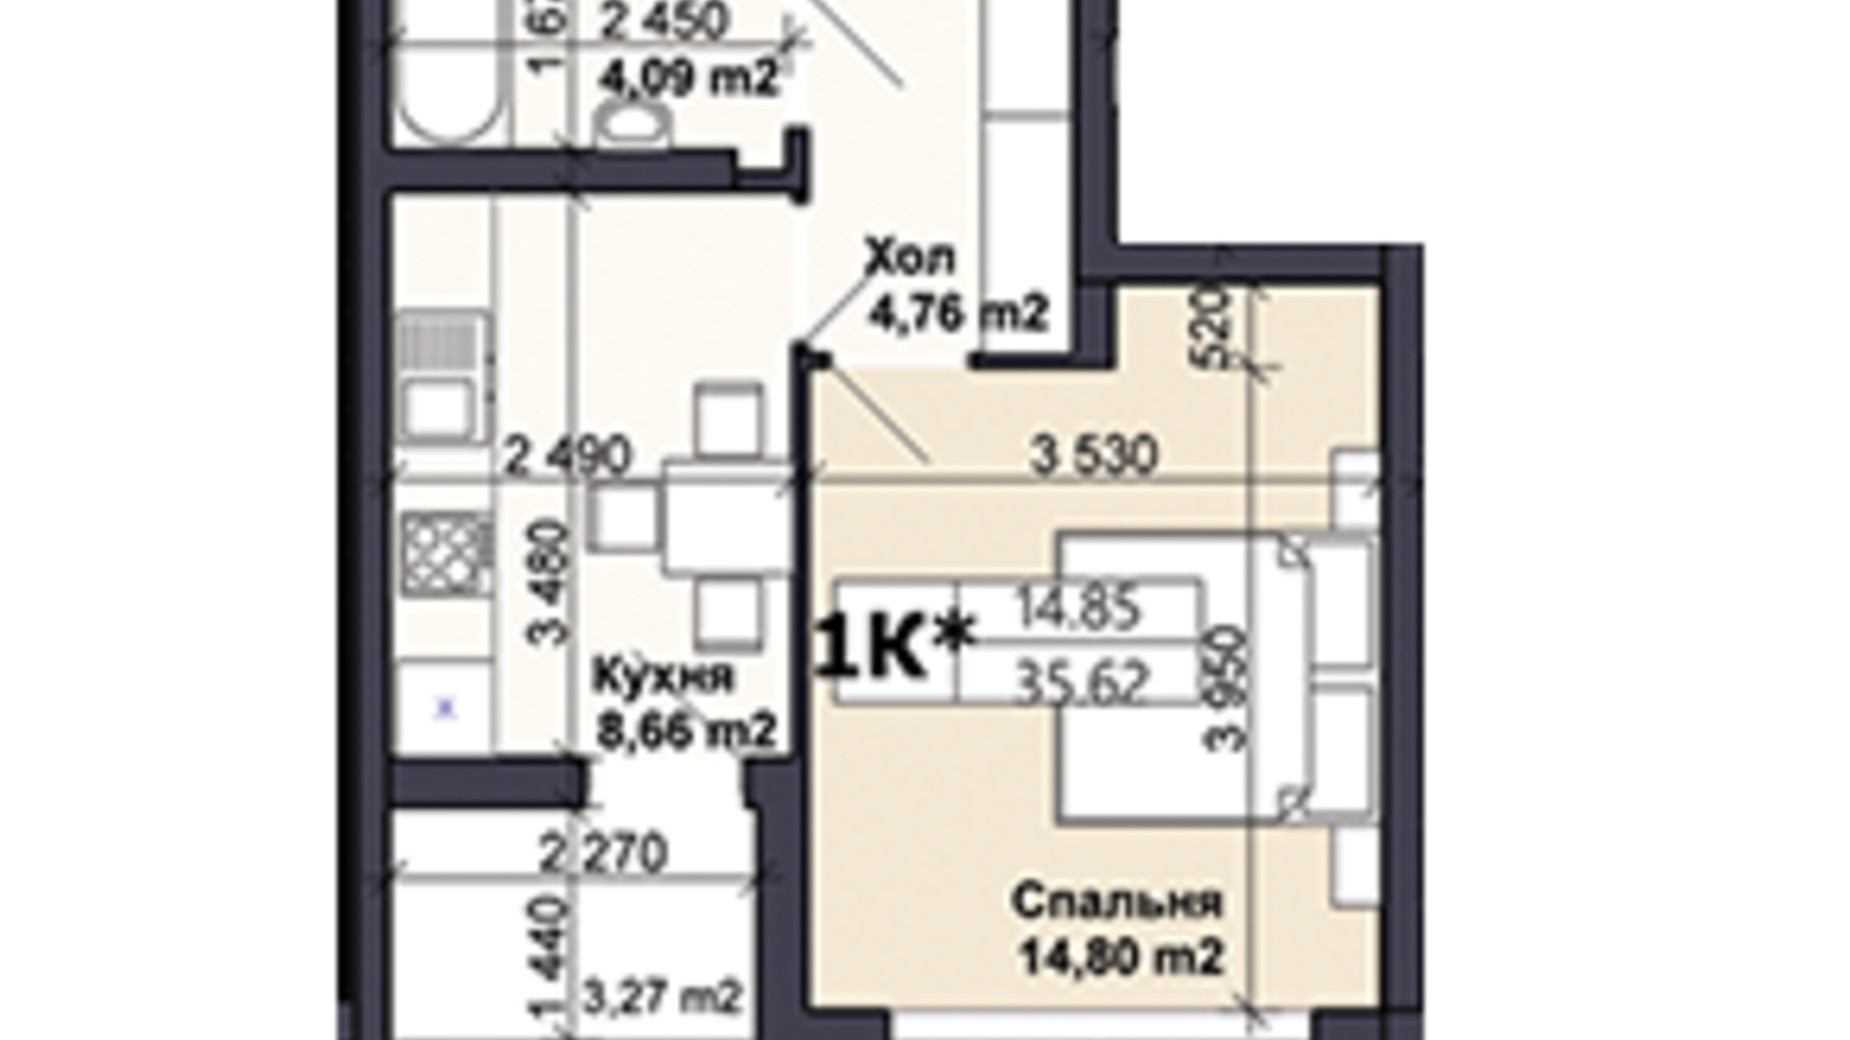 Планировка 1-комнатной квартиры в ЖК Саме той 35.62 м², фото 585408